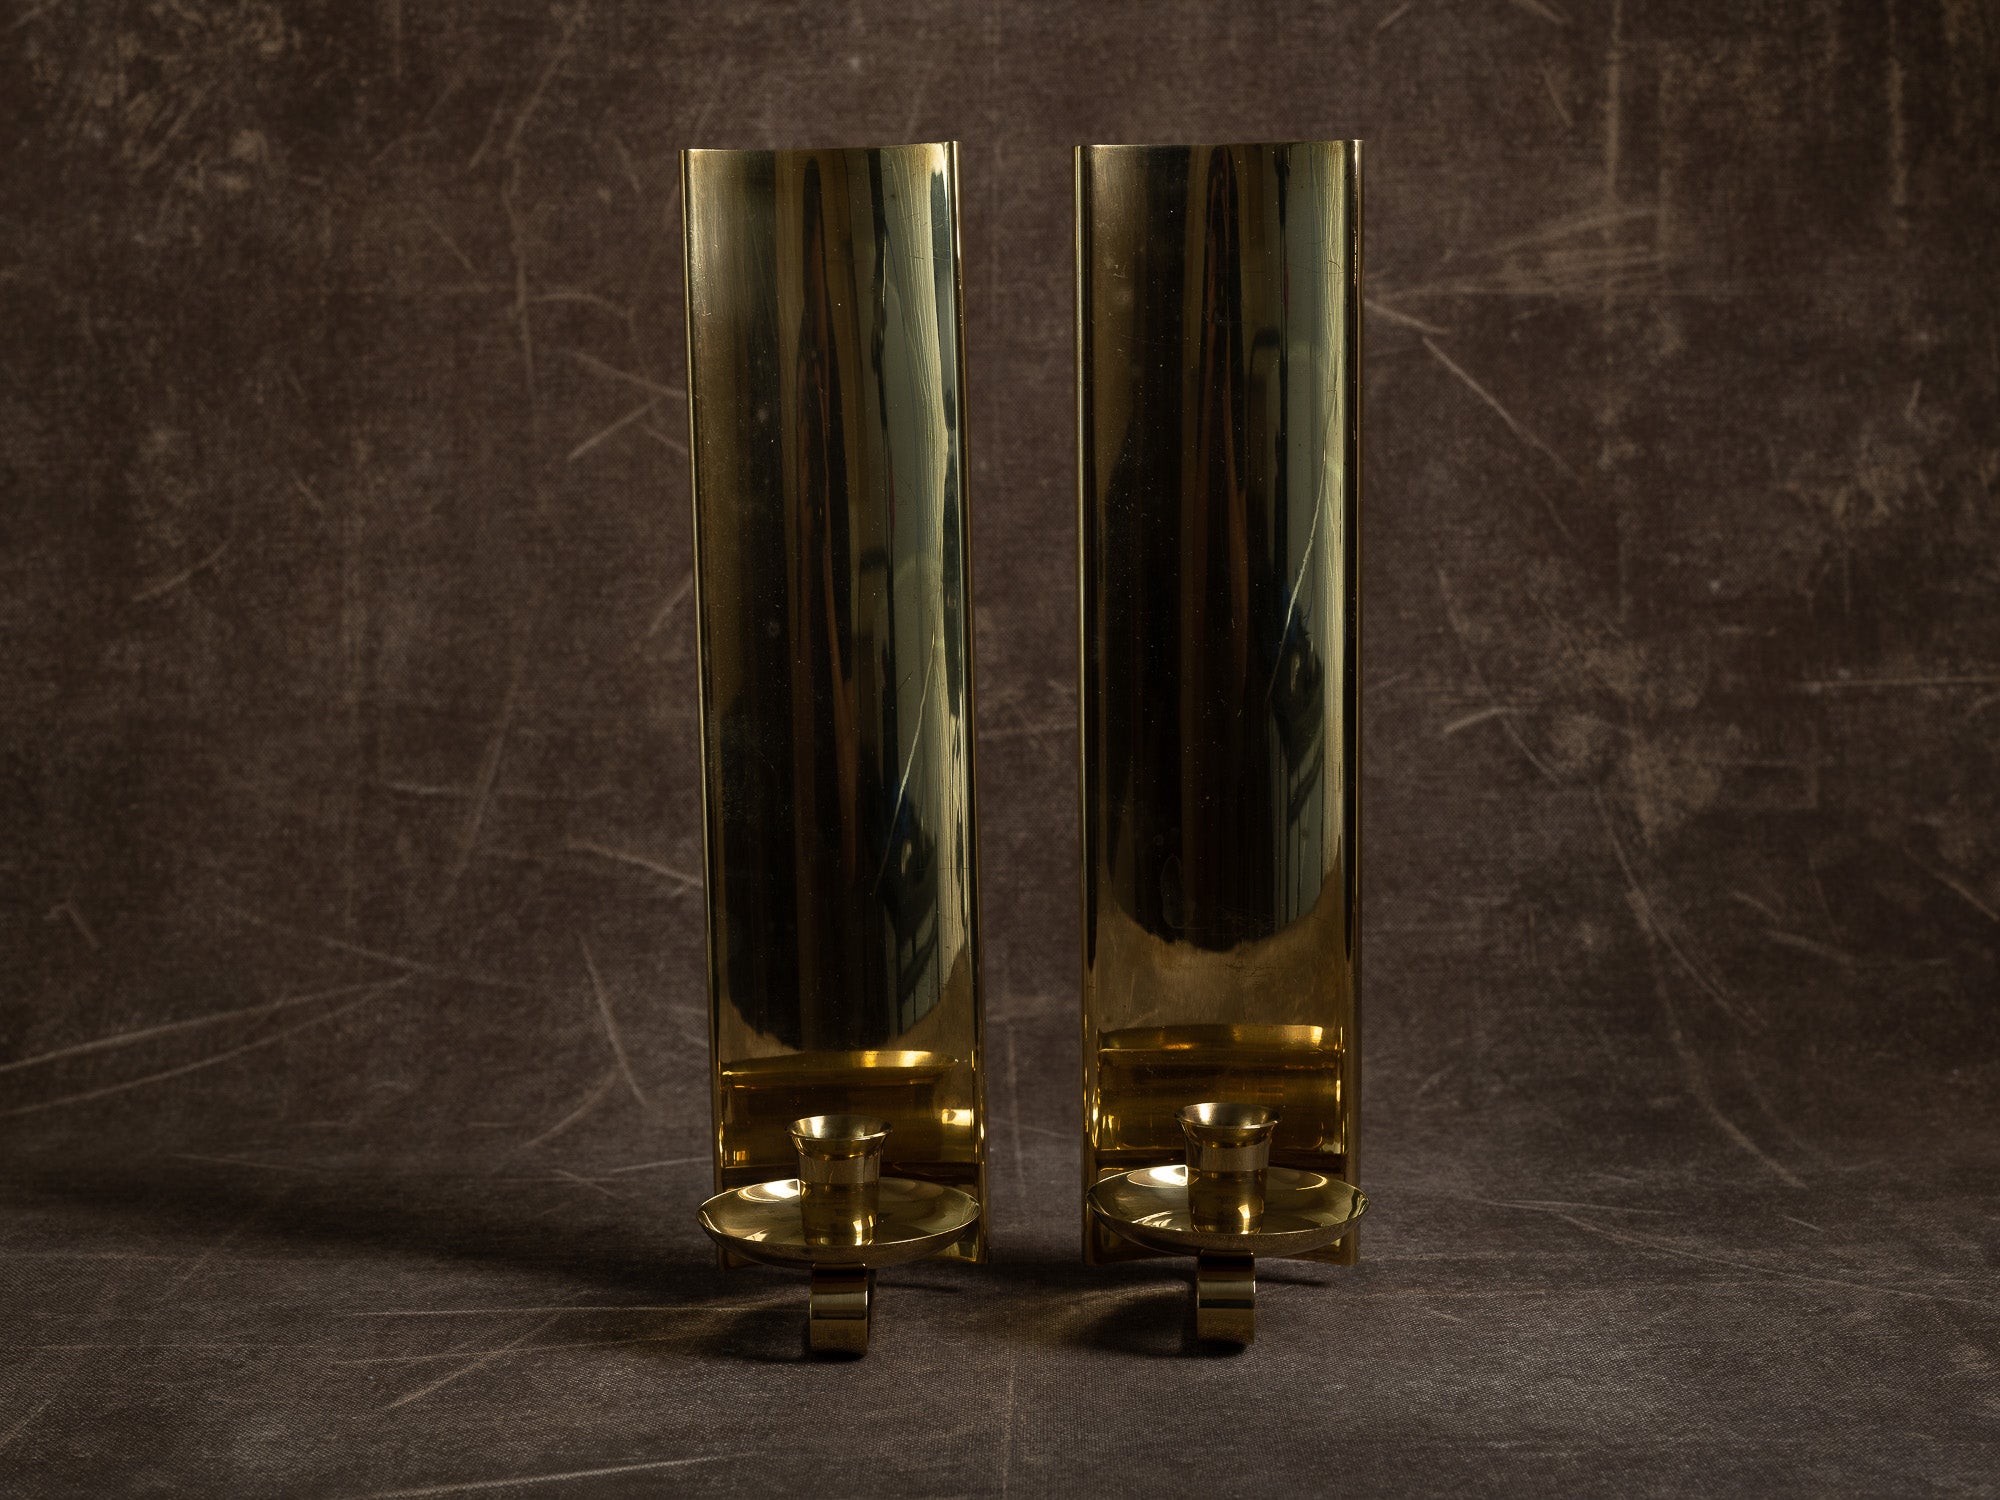 Paire de candélabres miroirs d'appliques en laiton, Suède (vers 1965-70)..Set of 2 modernist brass wall hanging candle holders, Sweden (ca. 1965-70)